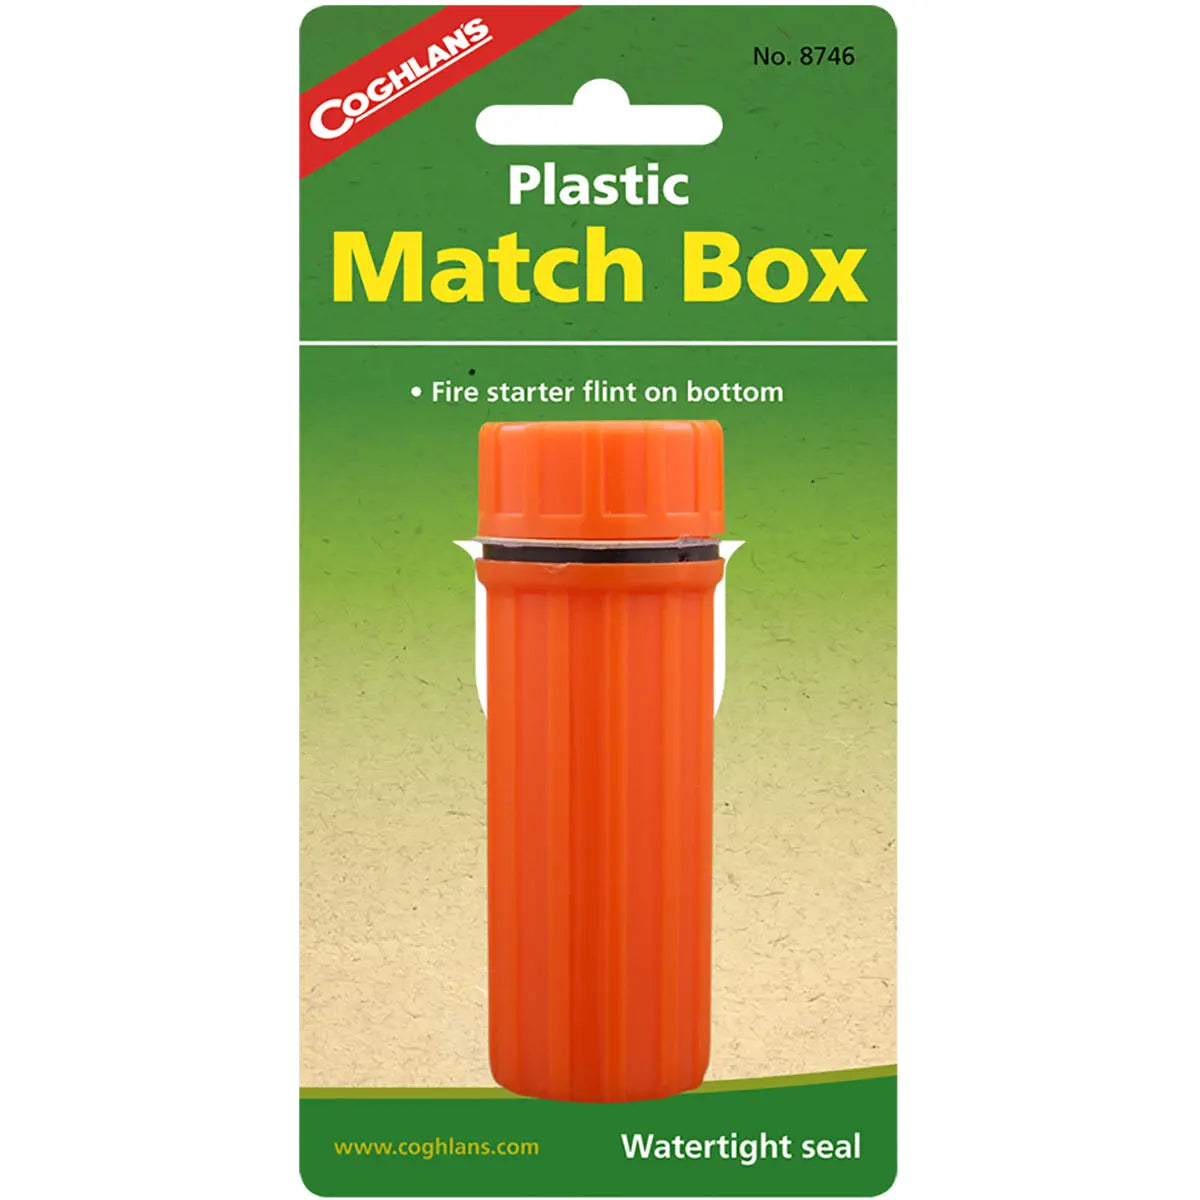 Coghlan's Plastic Match Box Waterproof Case w/ Fire Starter Flint Striker Orange Coghlan's